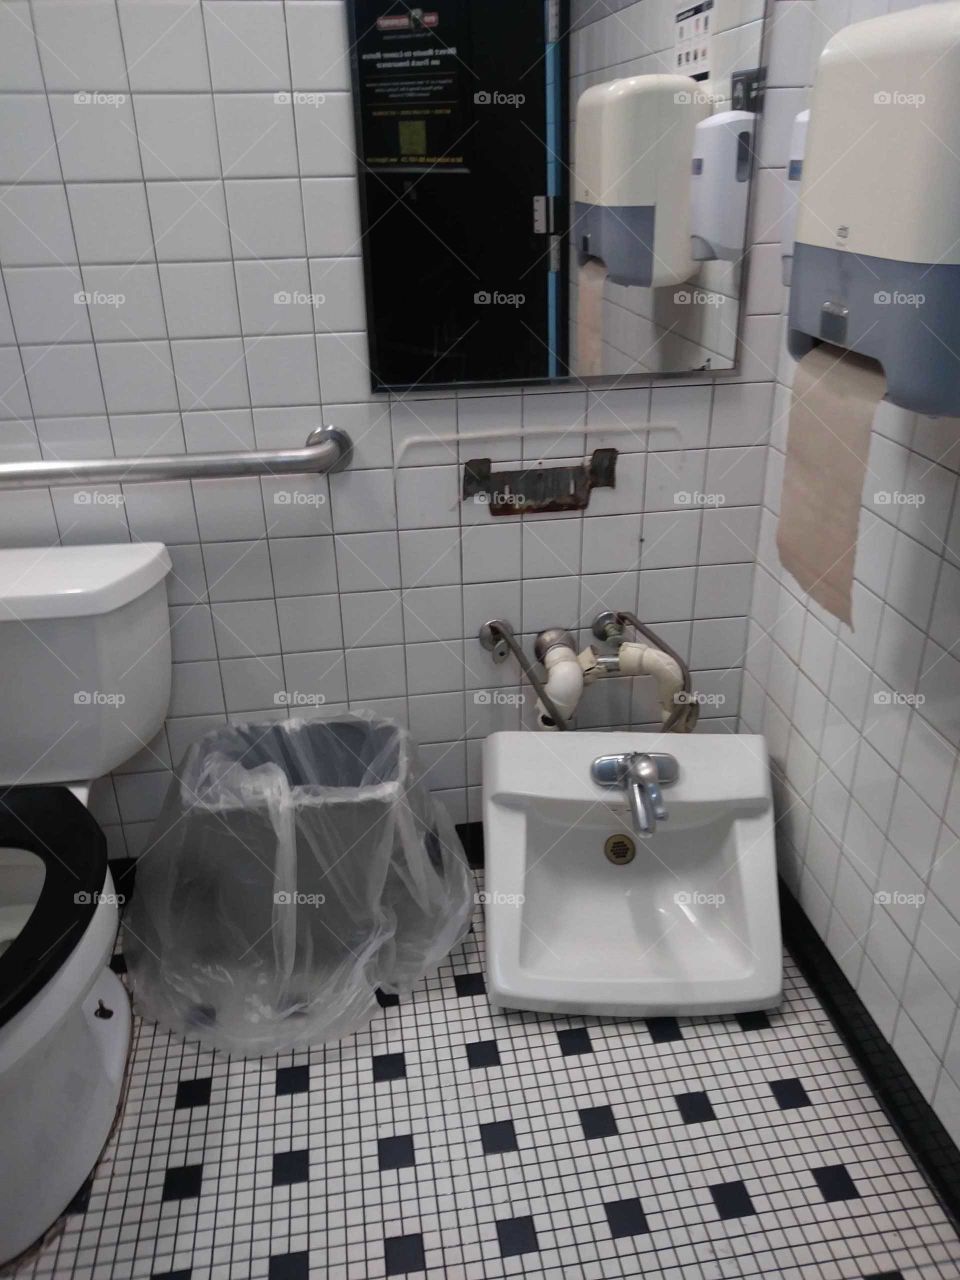 sink on floor in bathroom